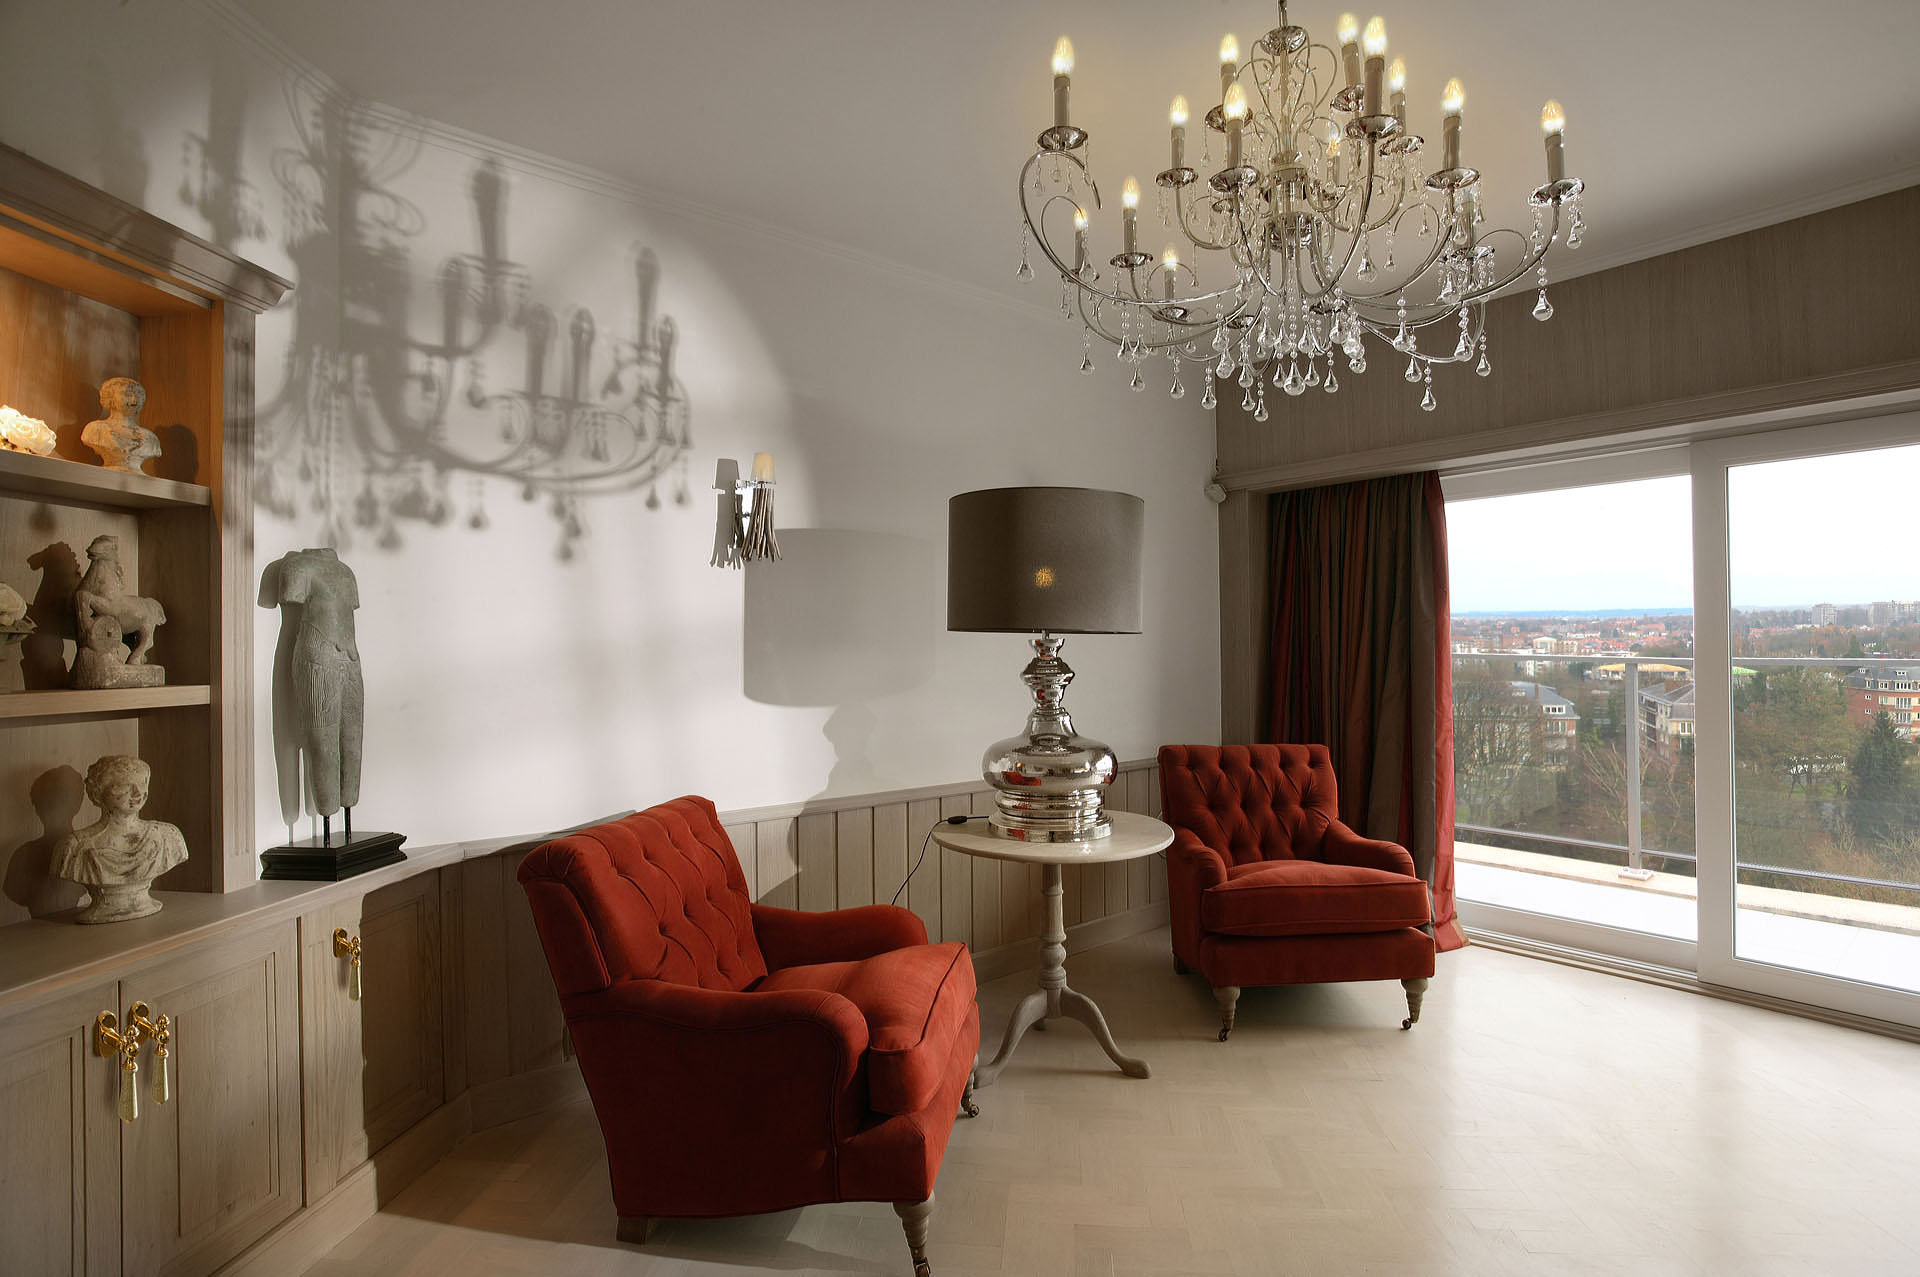 Penthouse de style rural serré à Bruxelles: - Marcotte Style